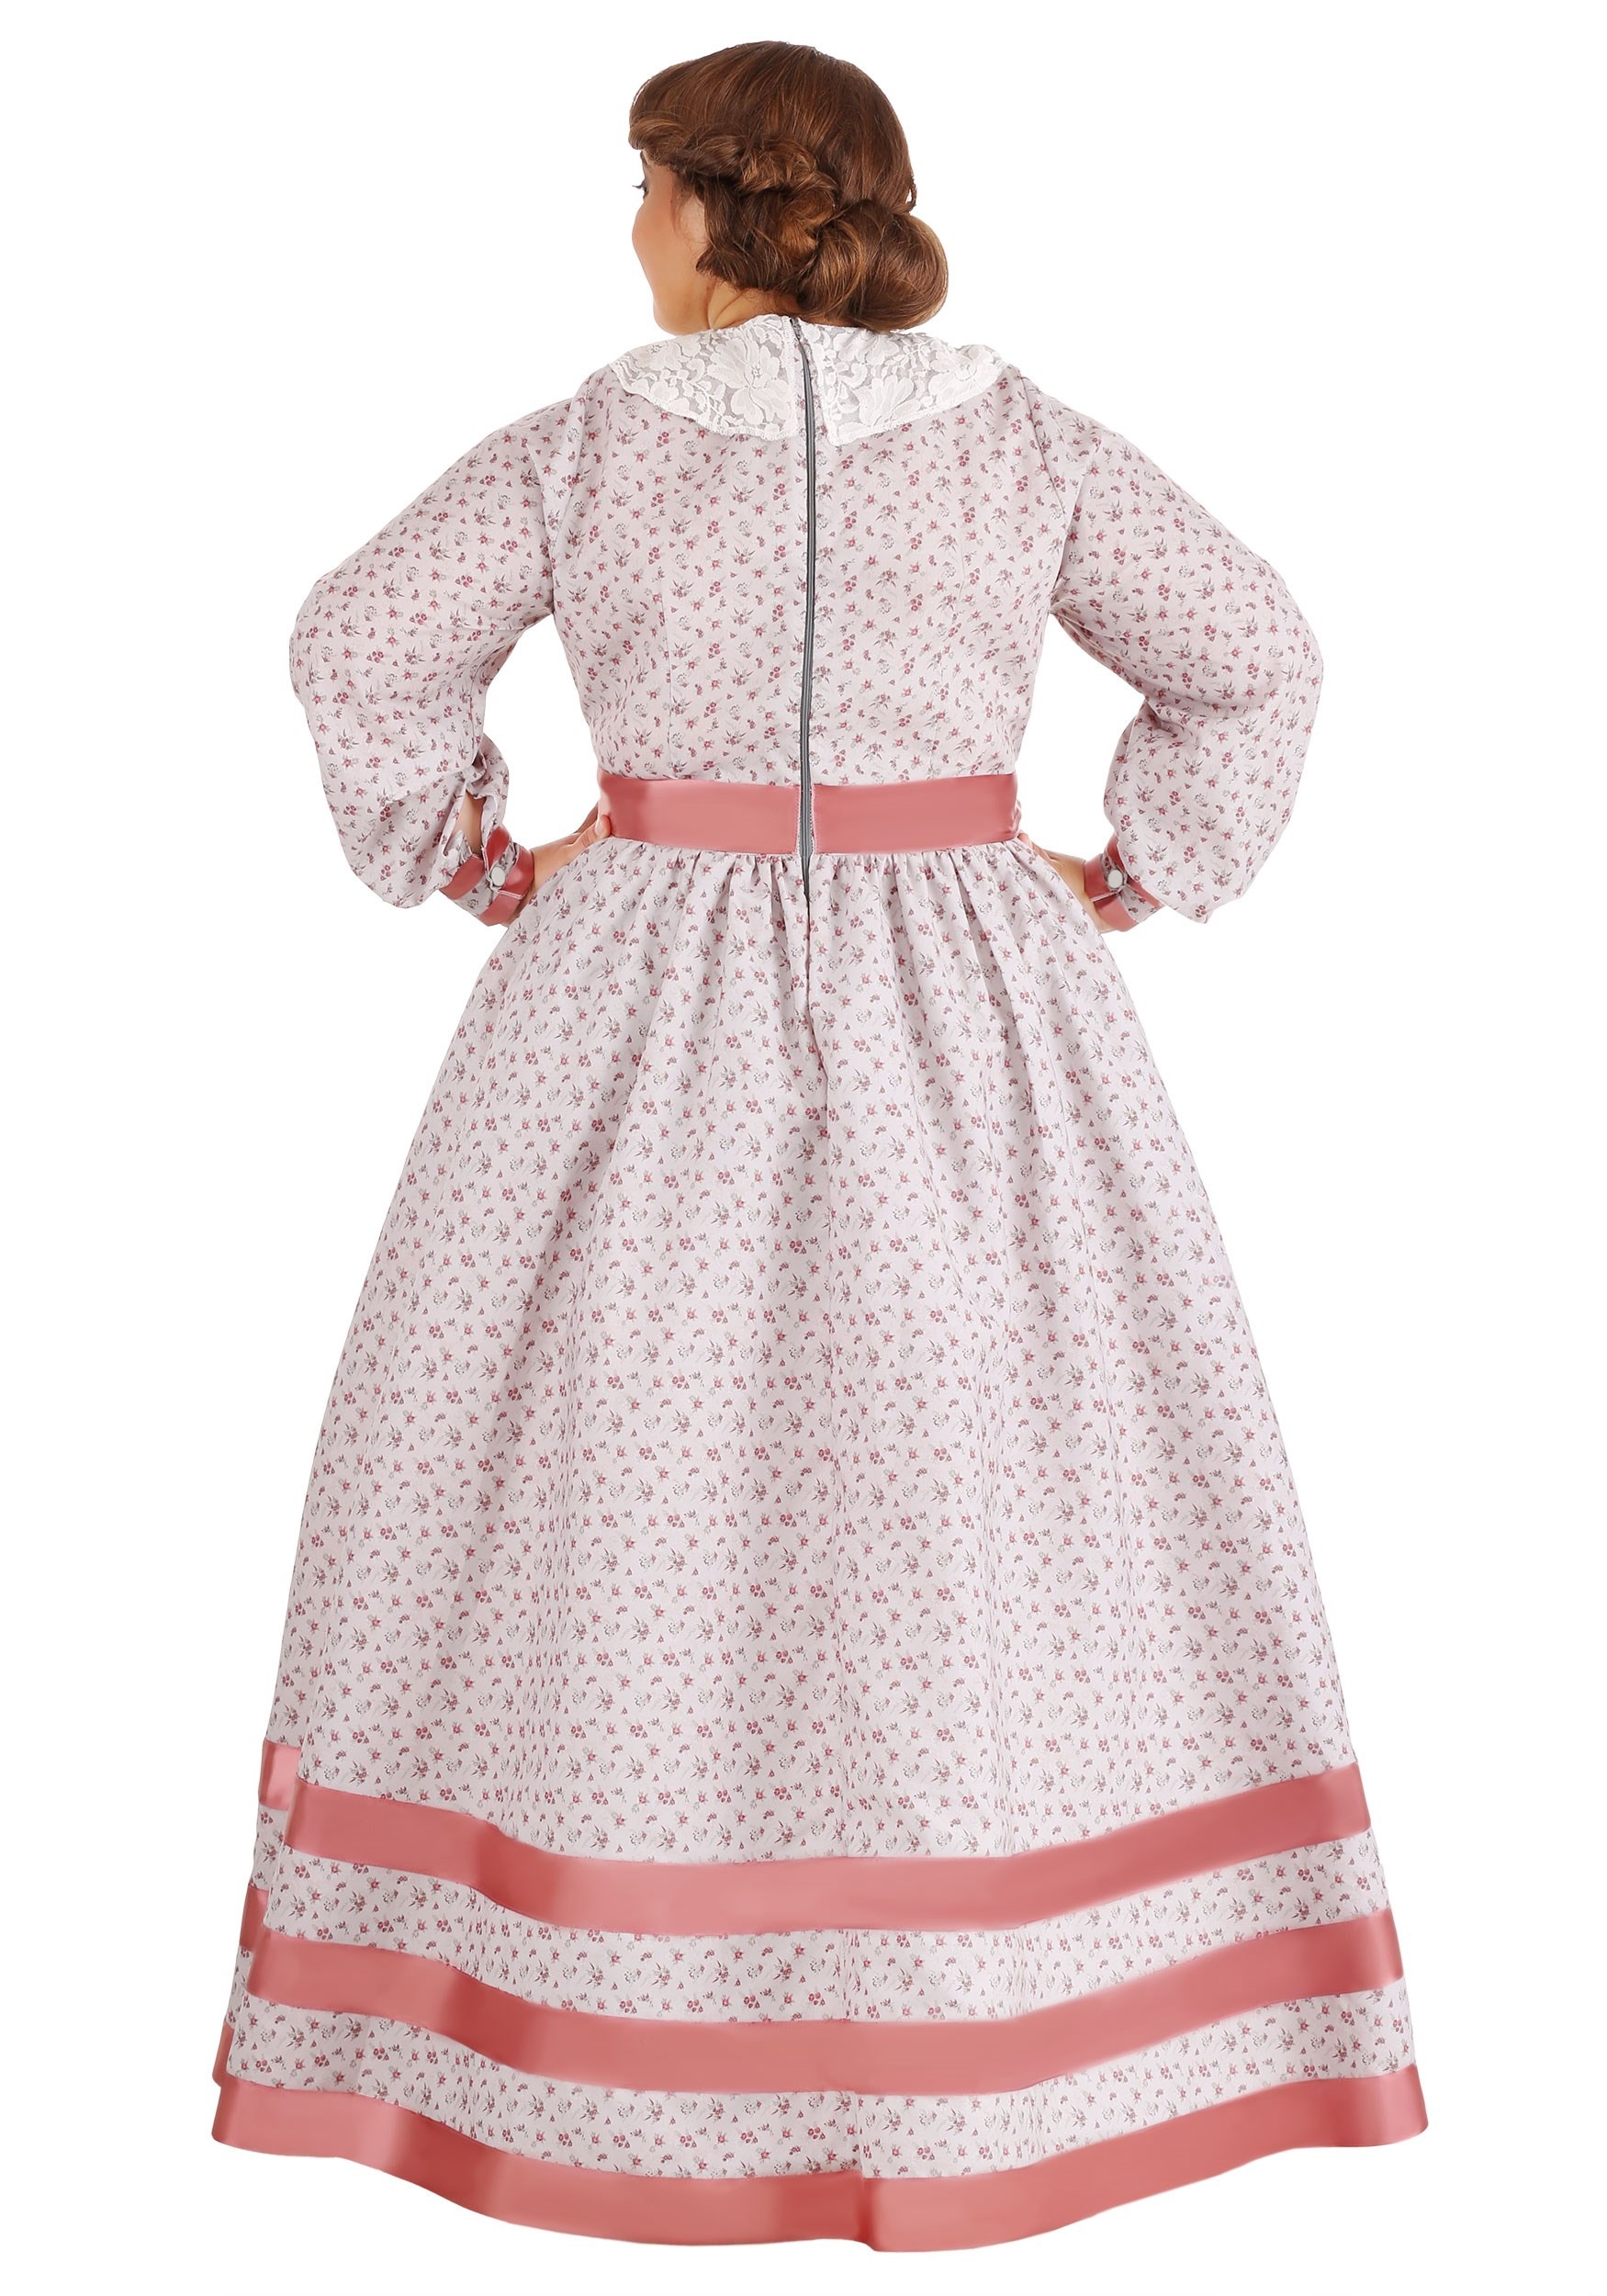 Exclusive Women's Plus Size Civil War Dress Costume